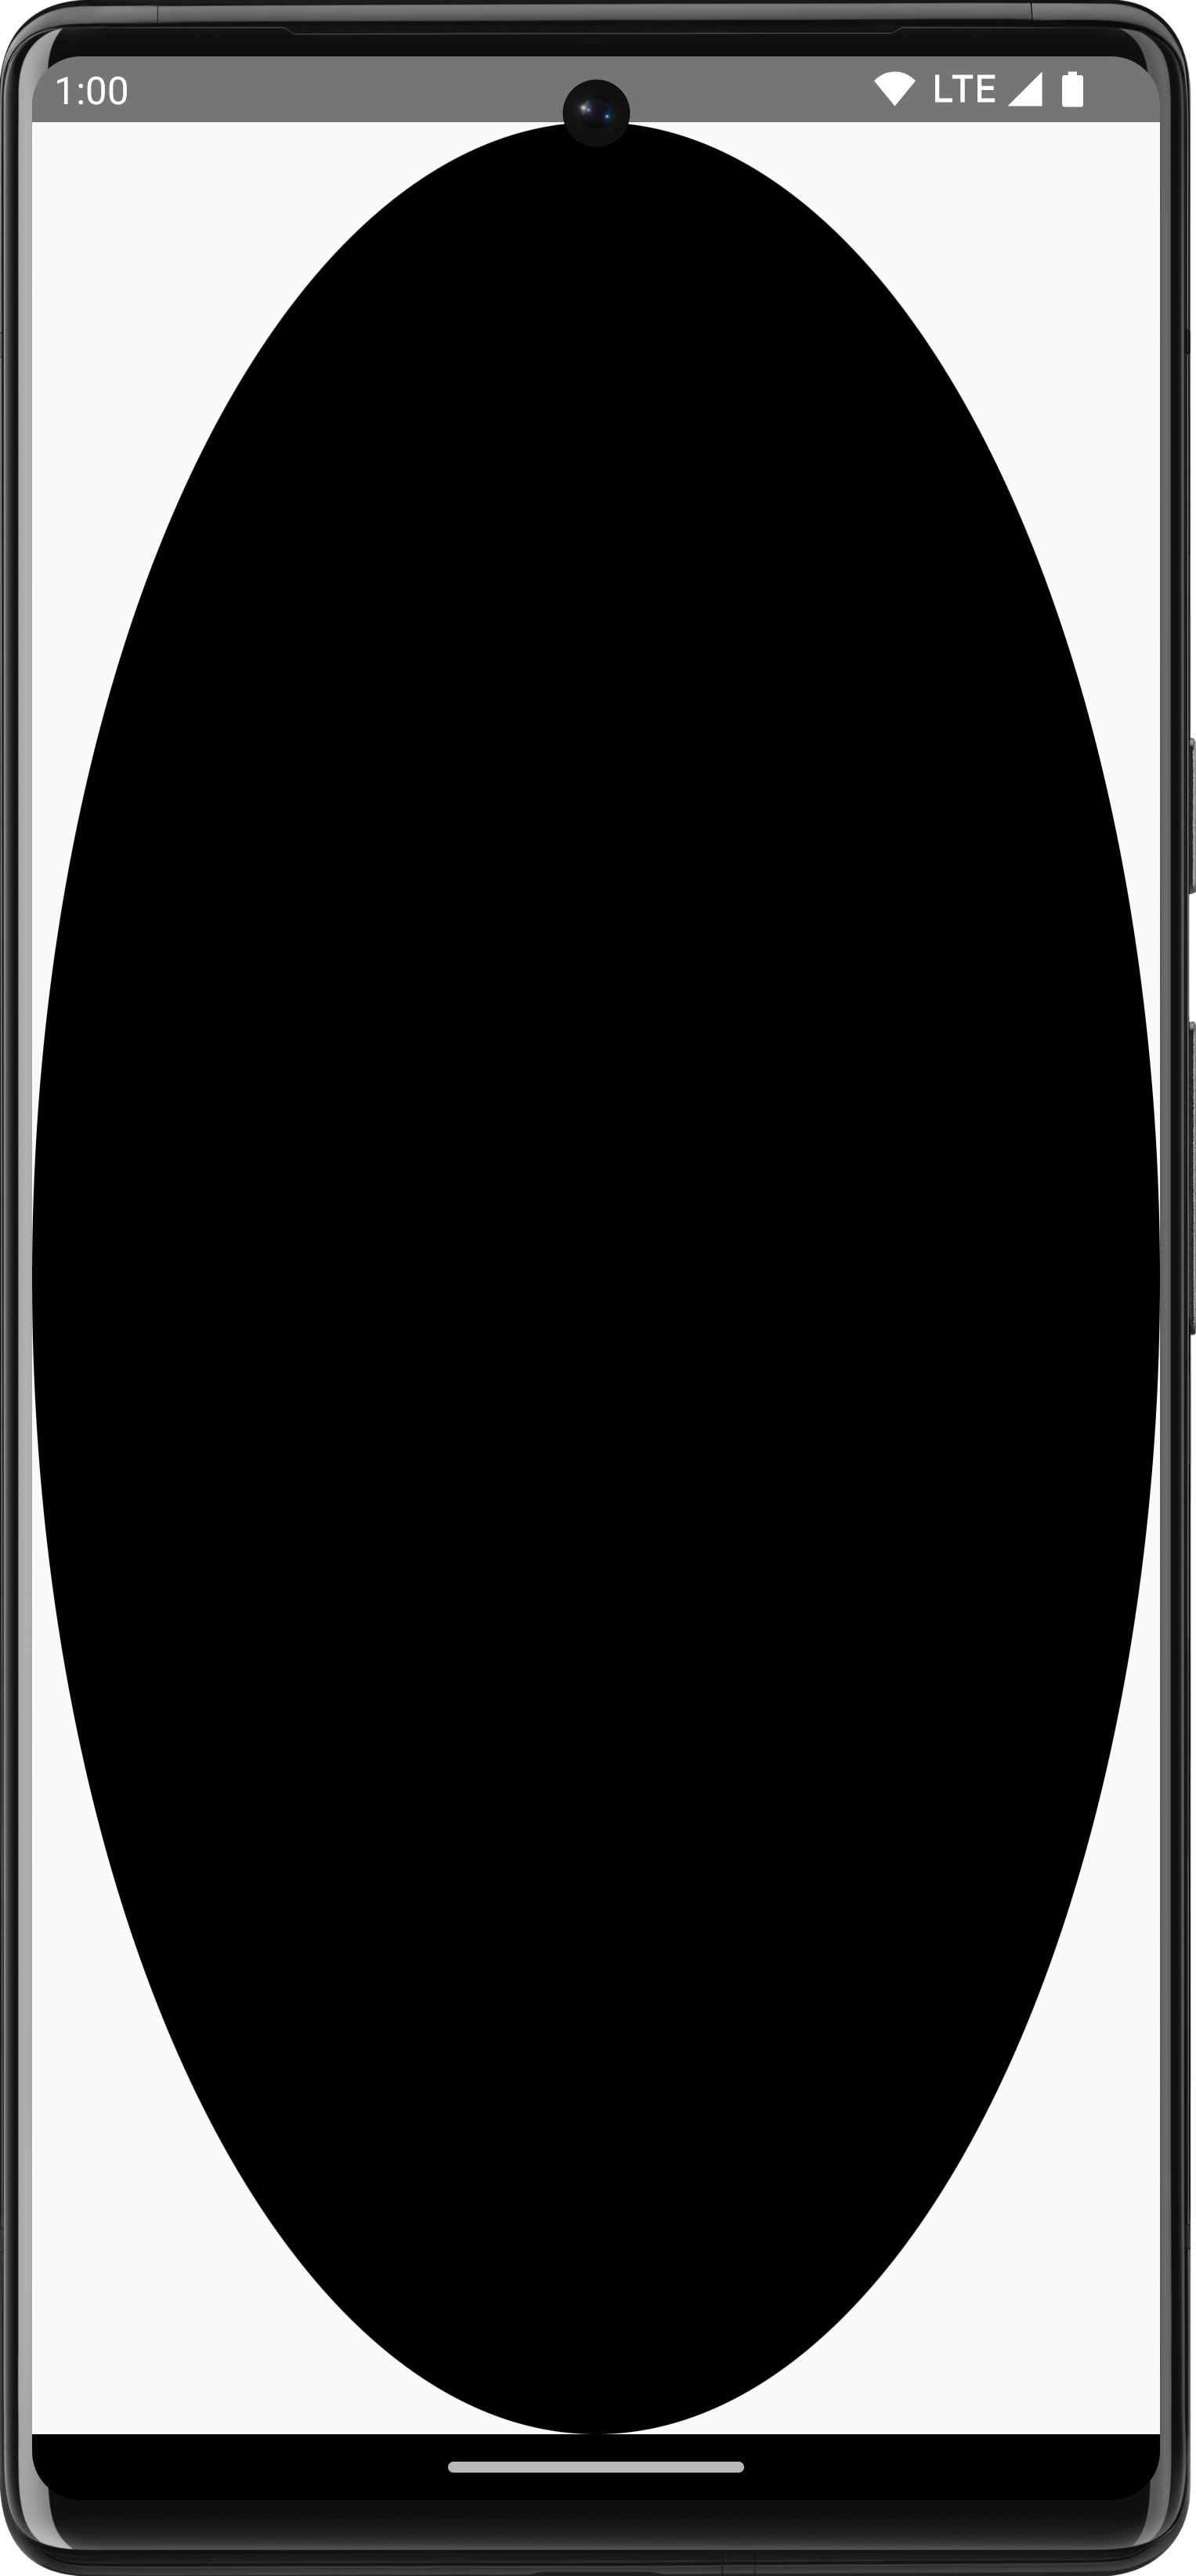 شكل بيضاوي أسود قابل للرسم يشغل الحجم الكامل